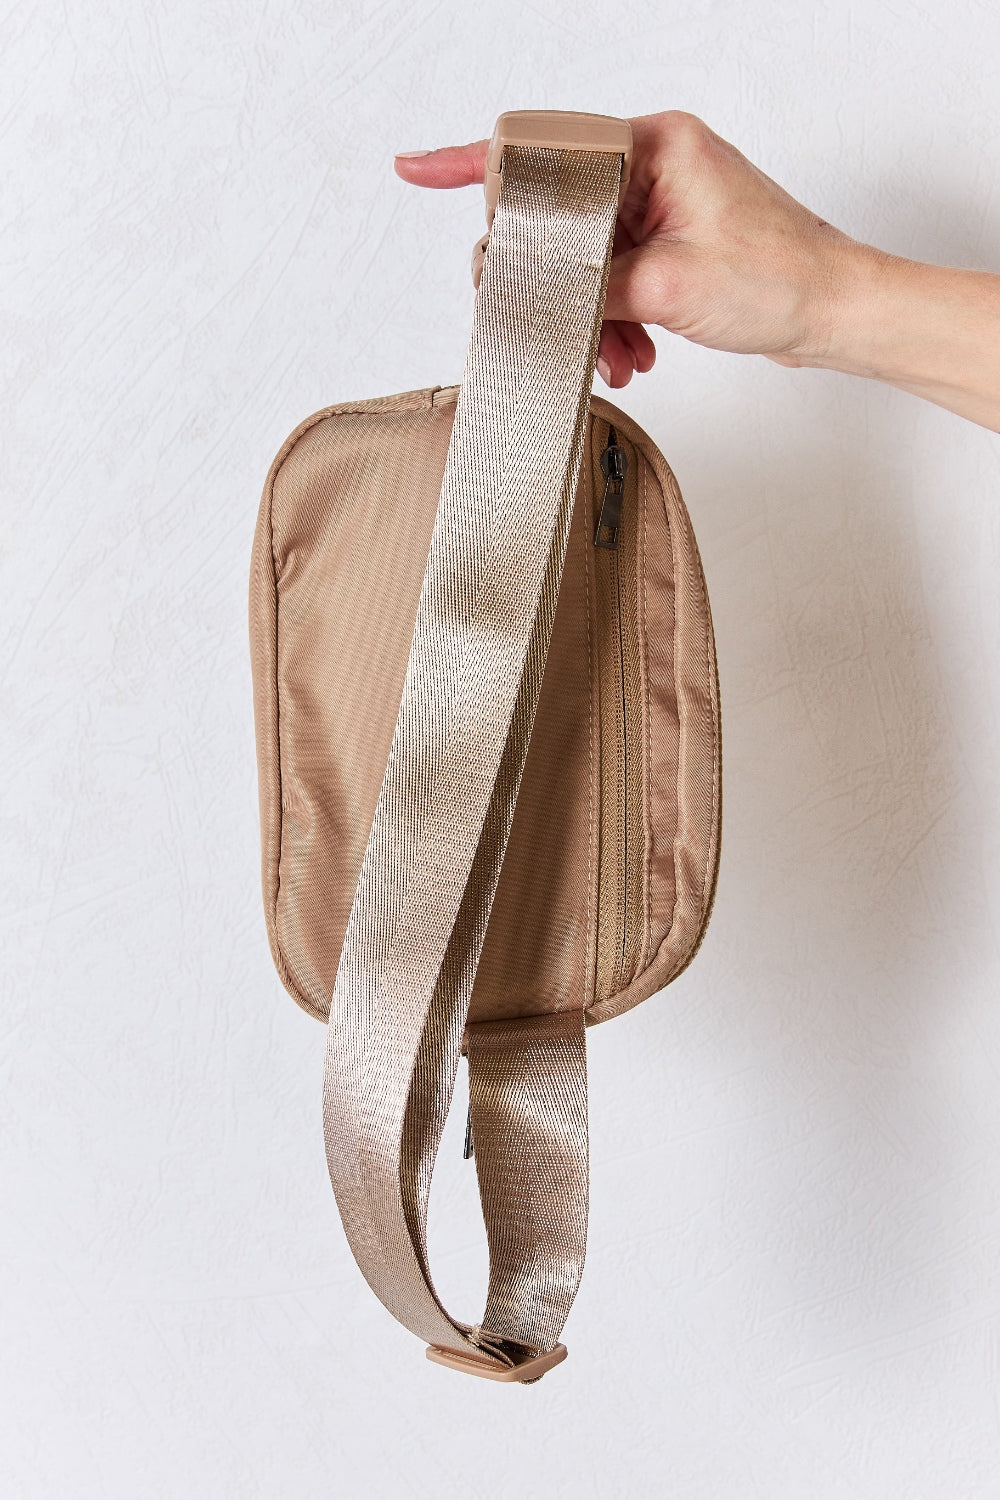 Pre-Order Adjustable Strap Sling Bag